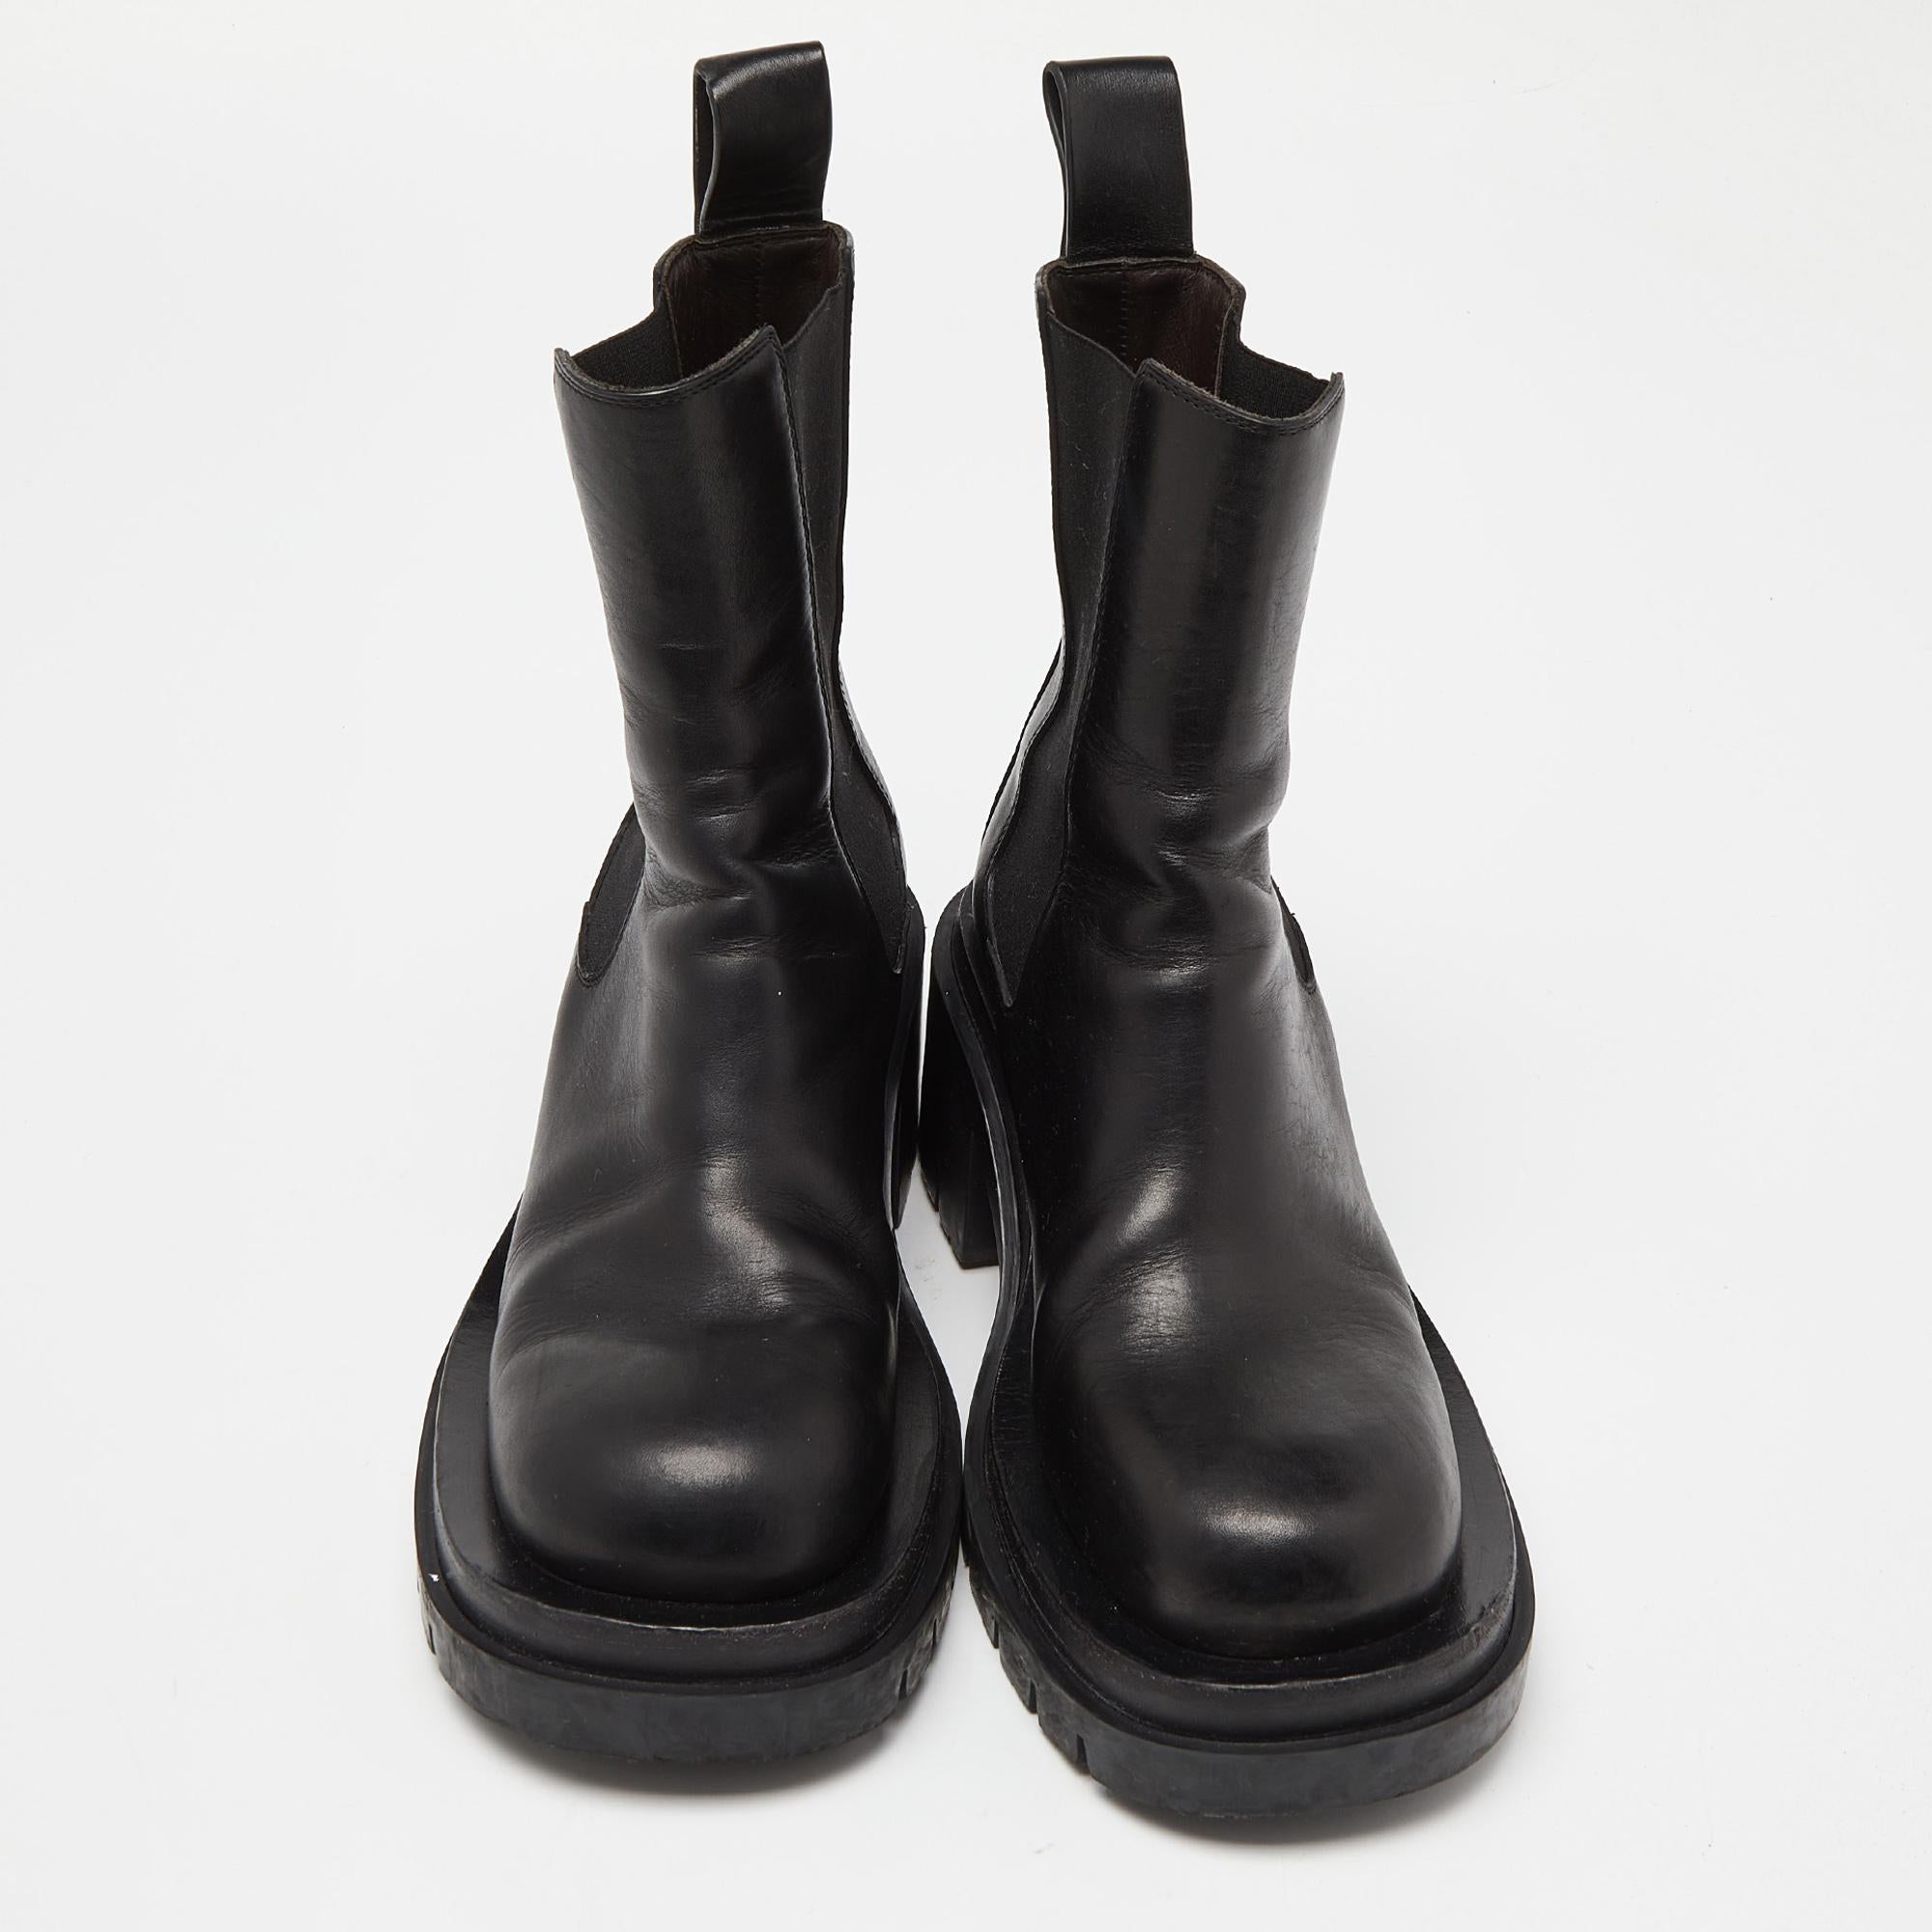 Profitez des journées les plus branchées avec ces élégantes bottes noires Bottega Veneta. D'une conception et d'un savoir-faire modernes, elles sont conçues pour vous offrir confort et élégance !

Comprend

Sac à poussière d'origine, boîte d'origine